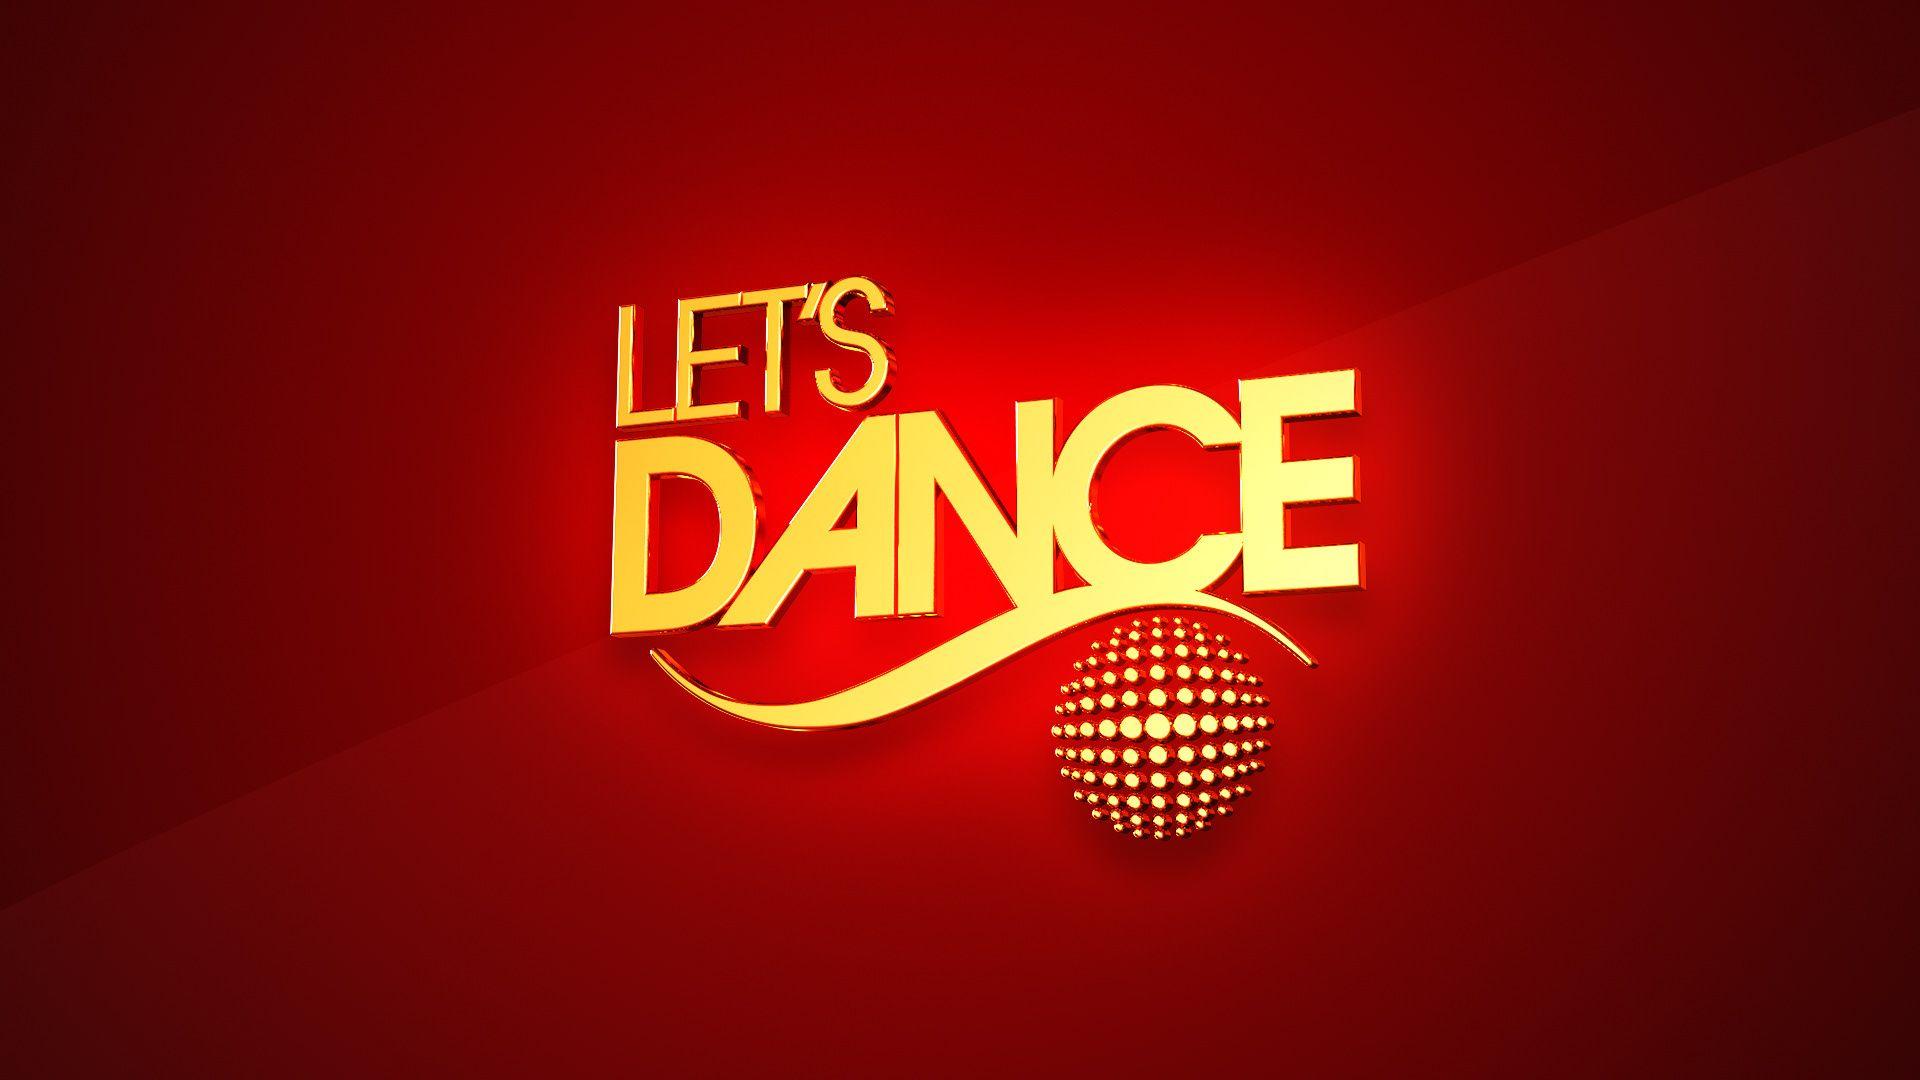 Let's Dance Logo - Pixeldust AB - LET'S DANCE 2012